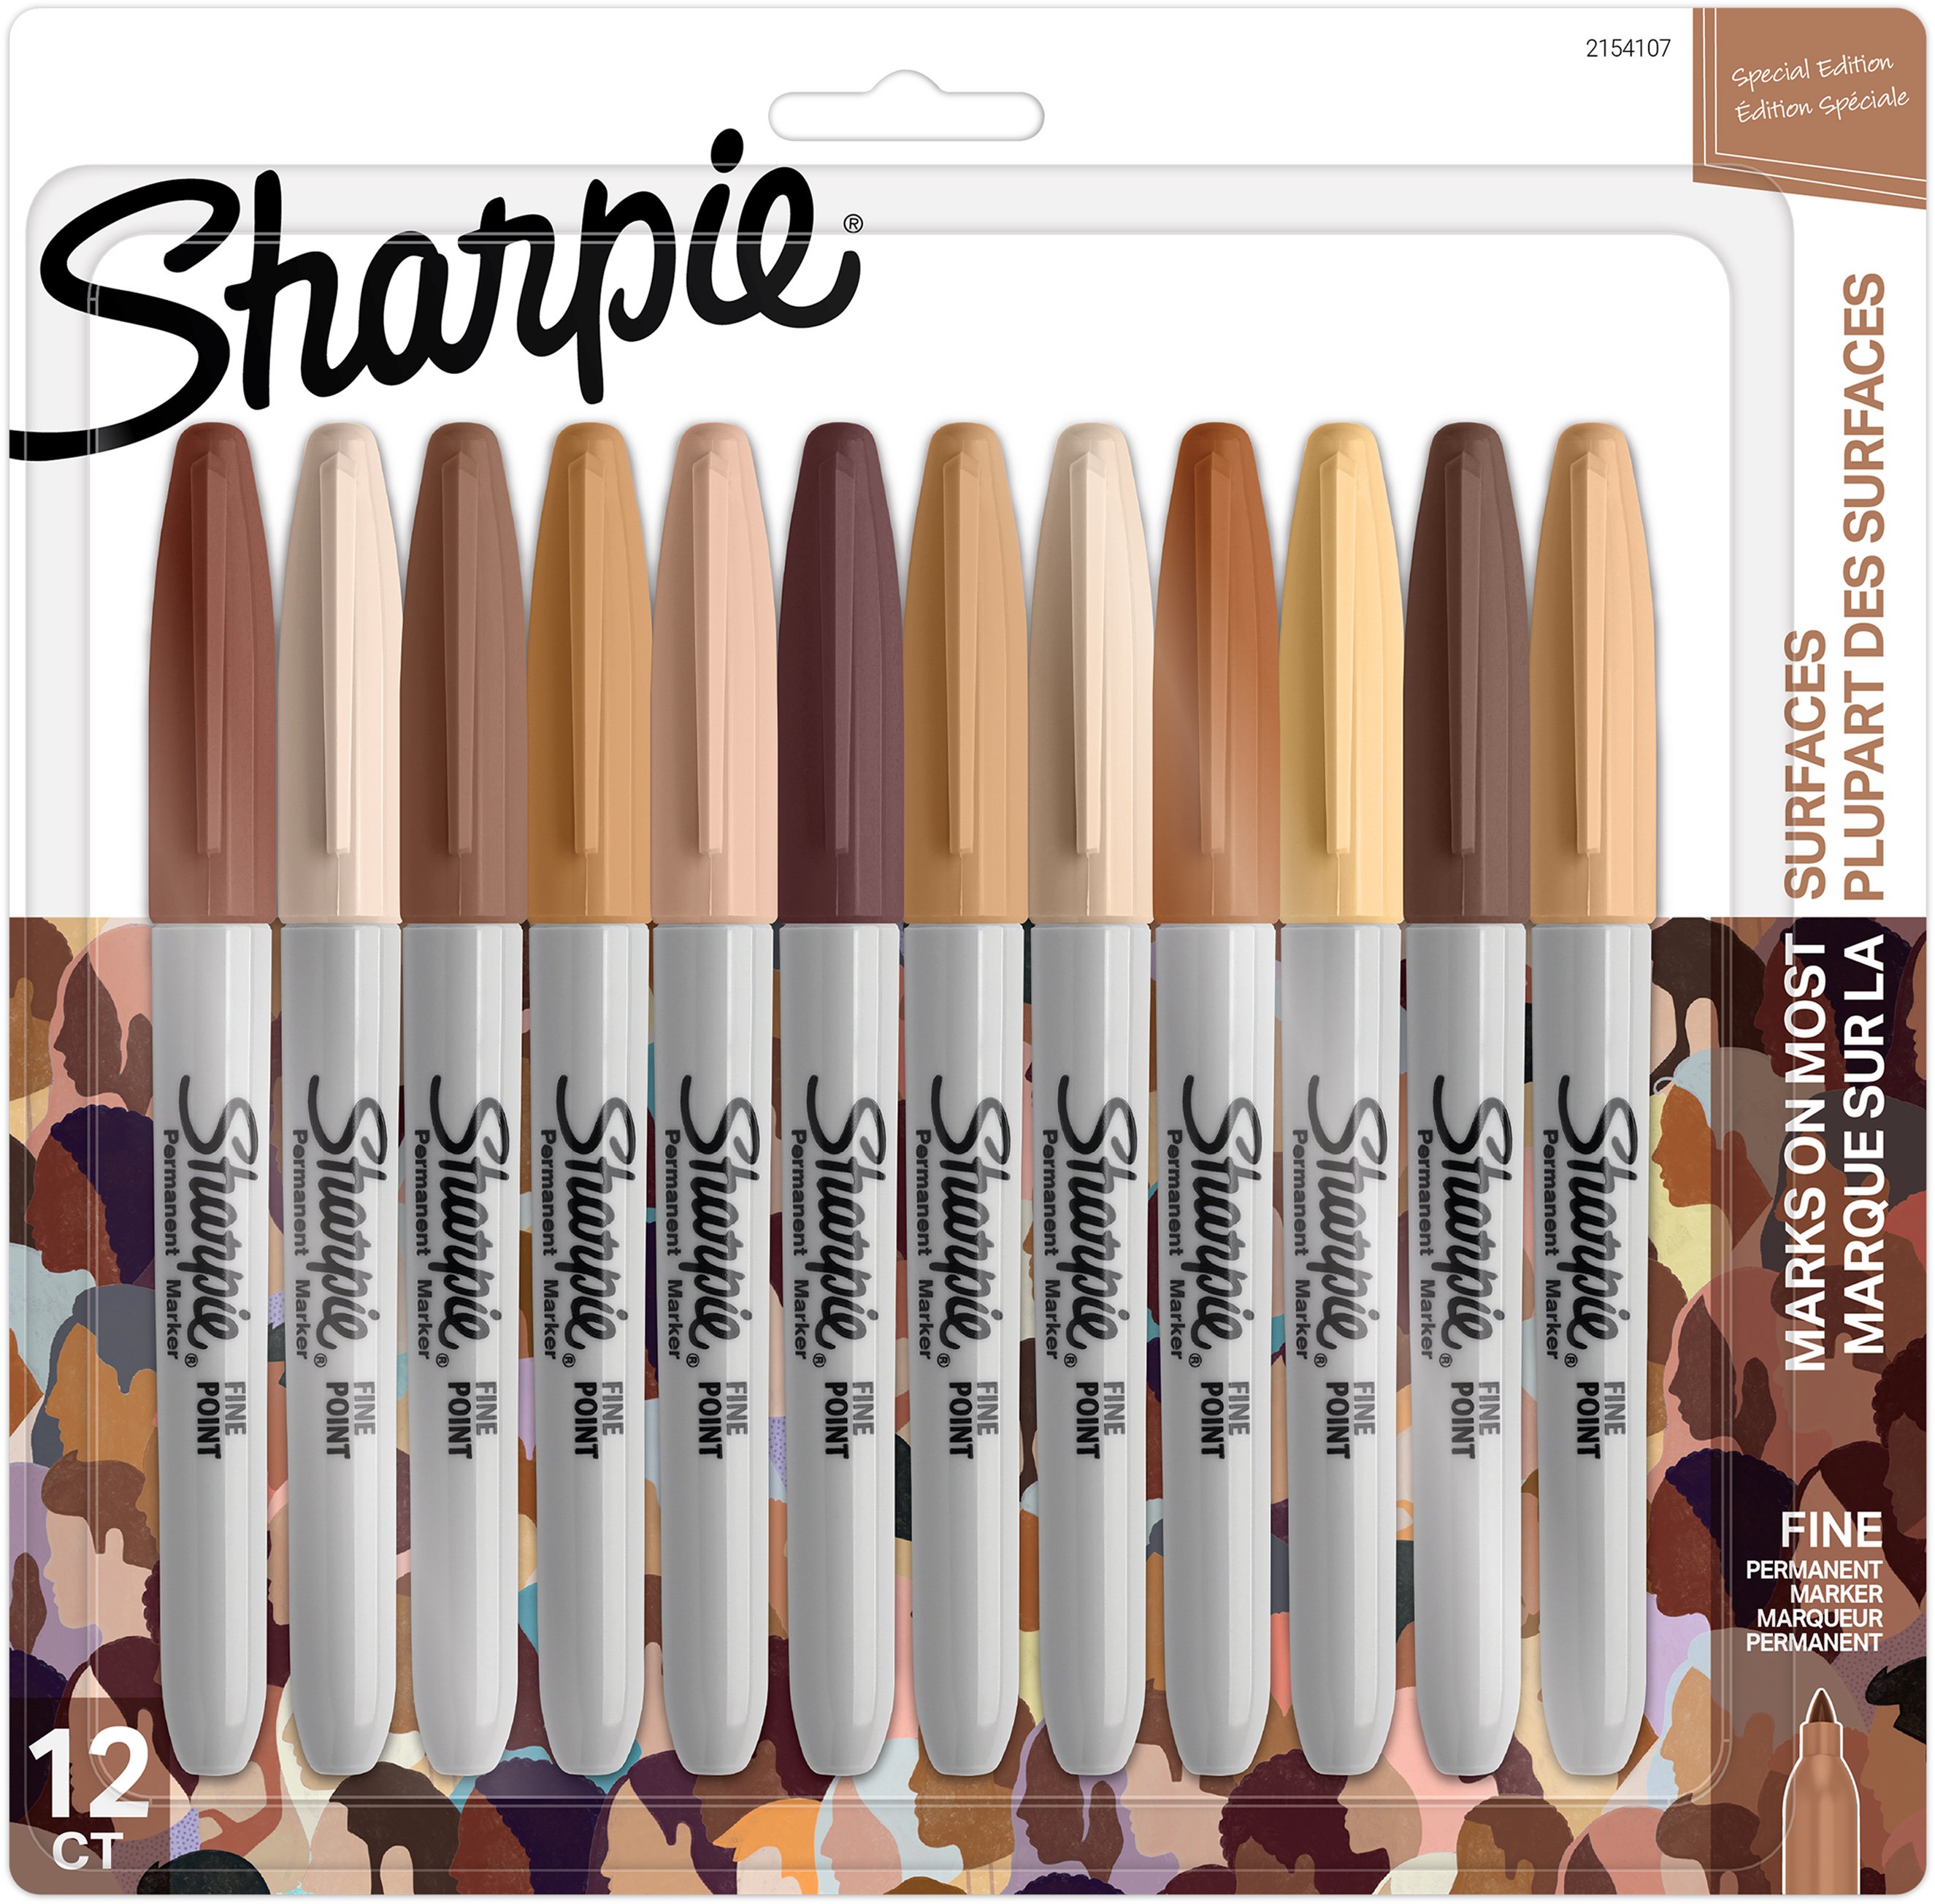 Sharpie Fine Tip markers 4 color set